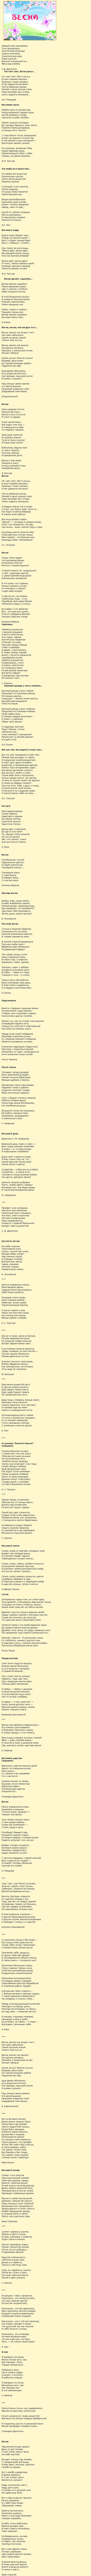 Пушкин стихи о весне для детей